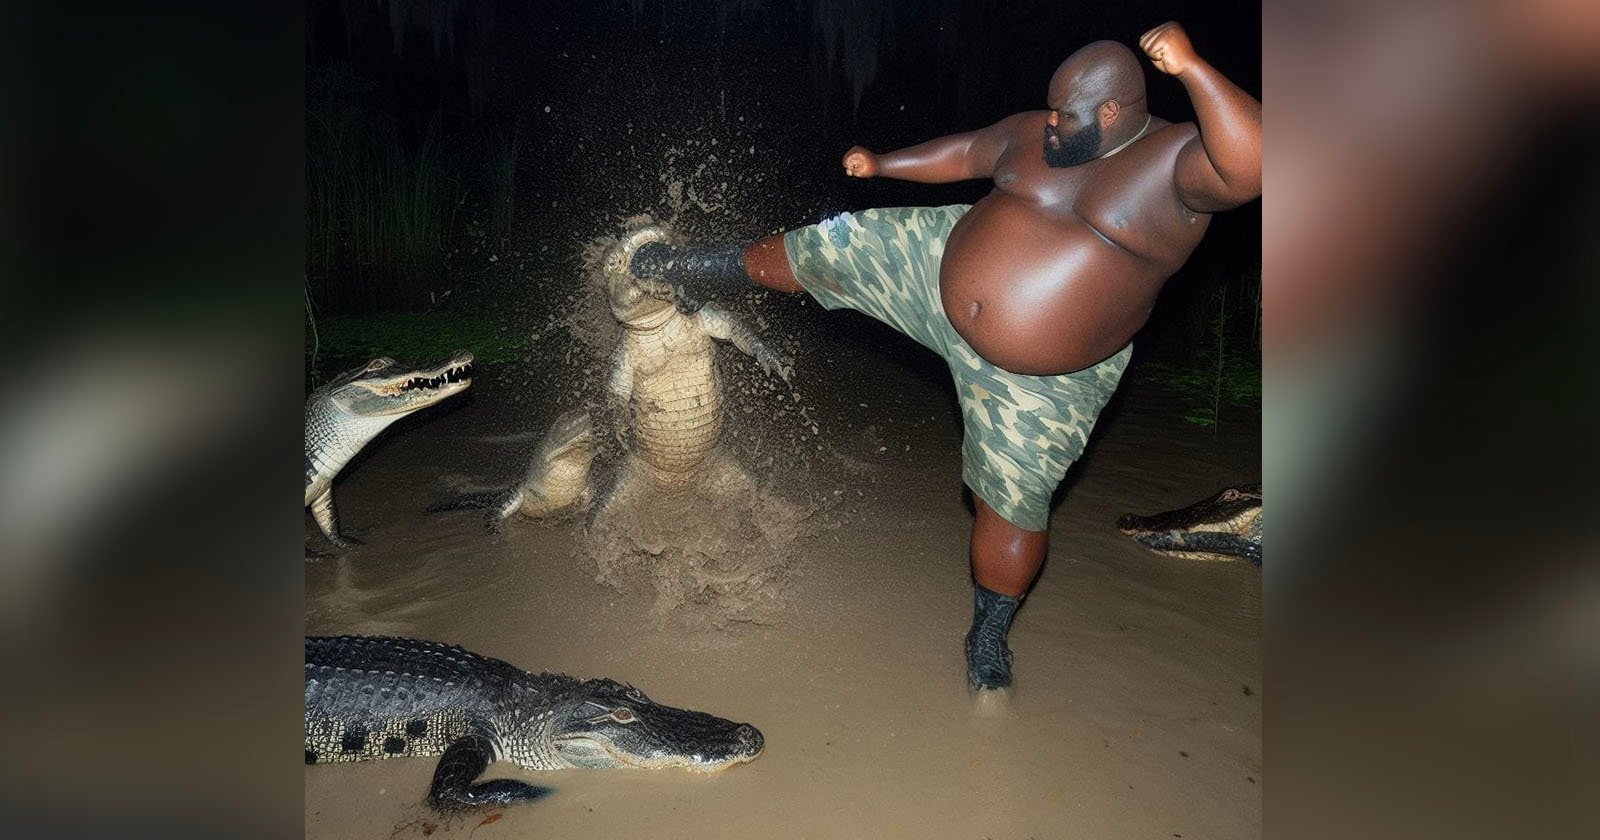  internet fooled viral image man fighting alligator 